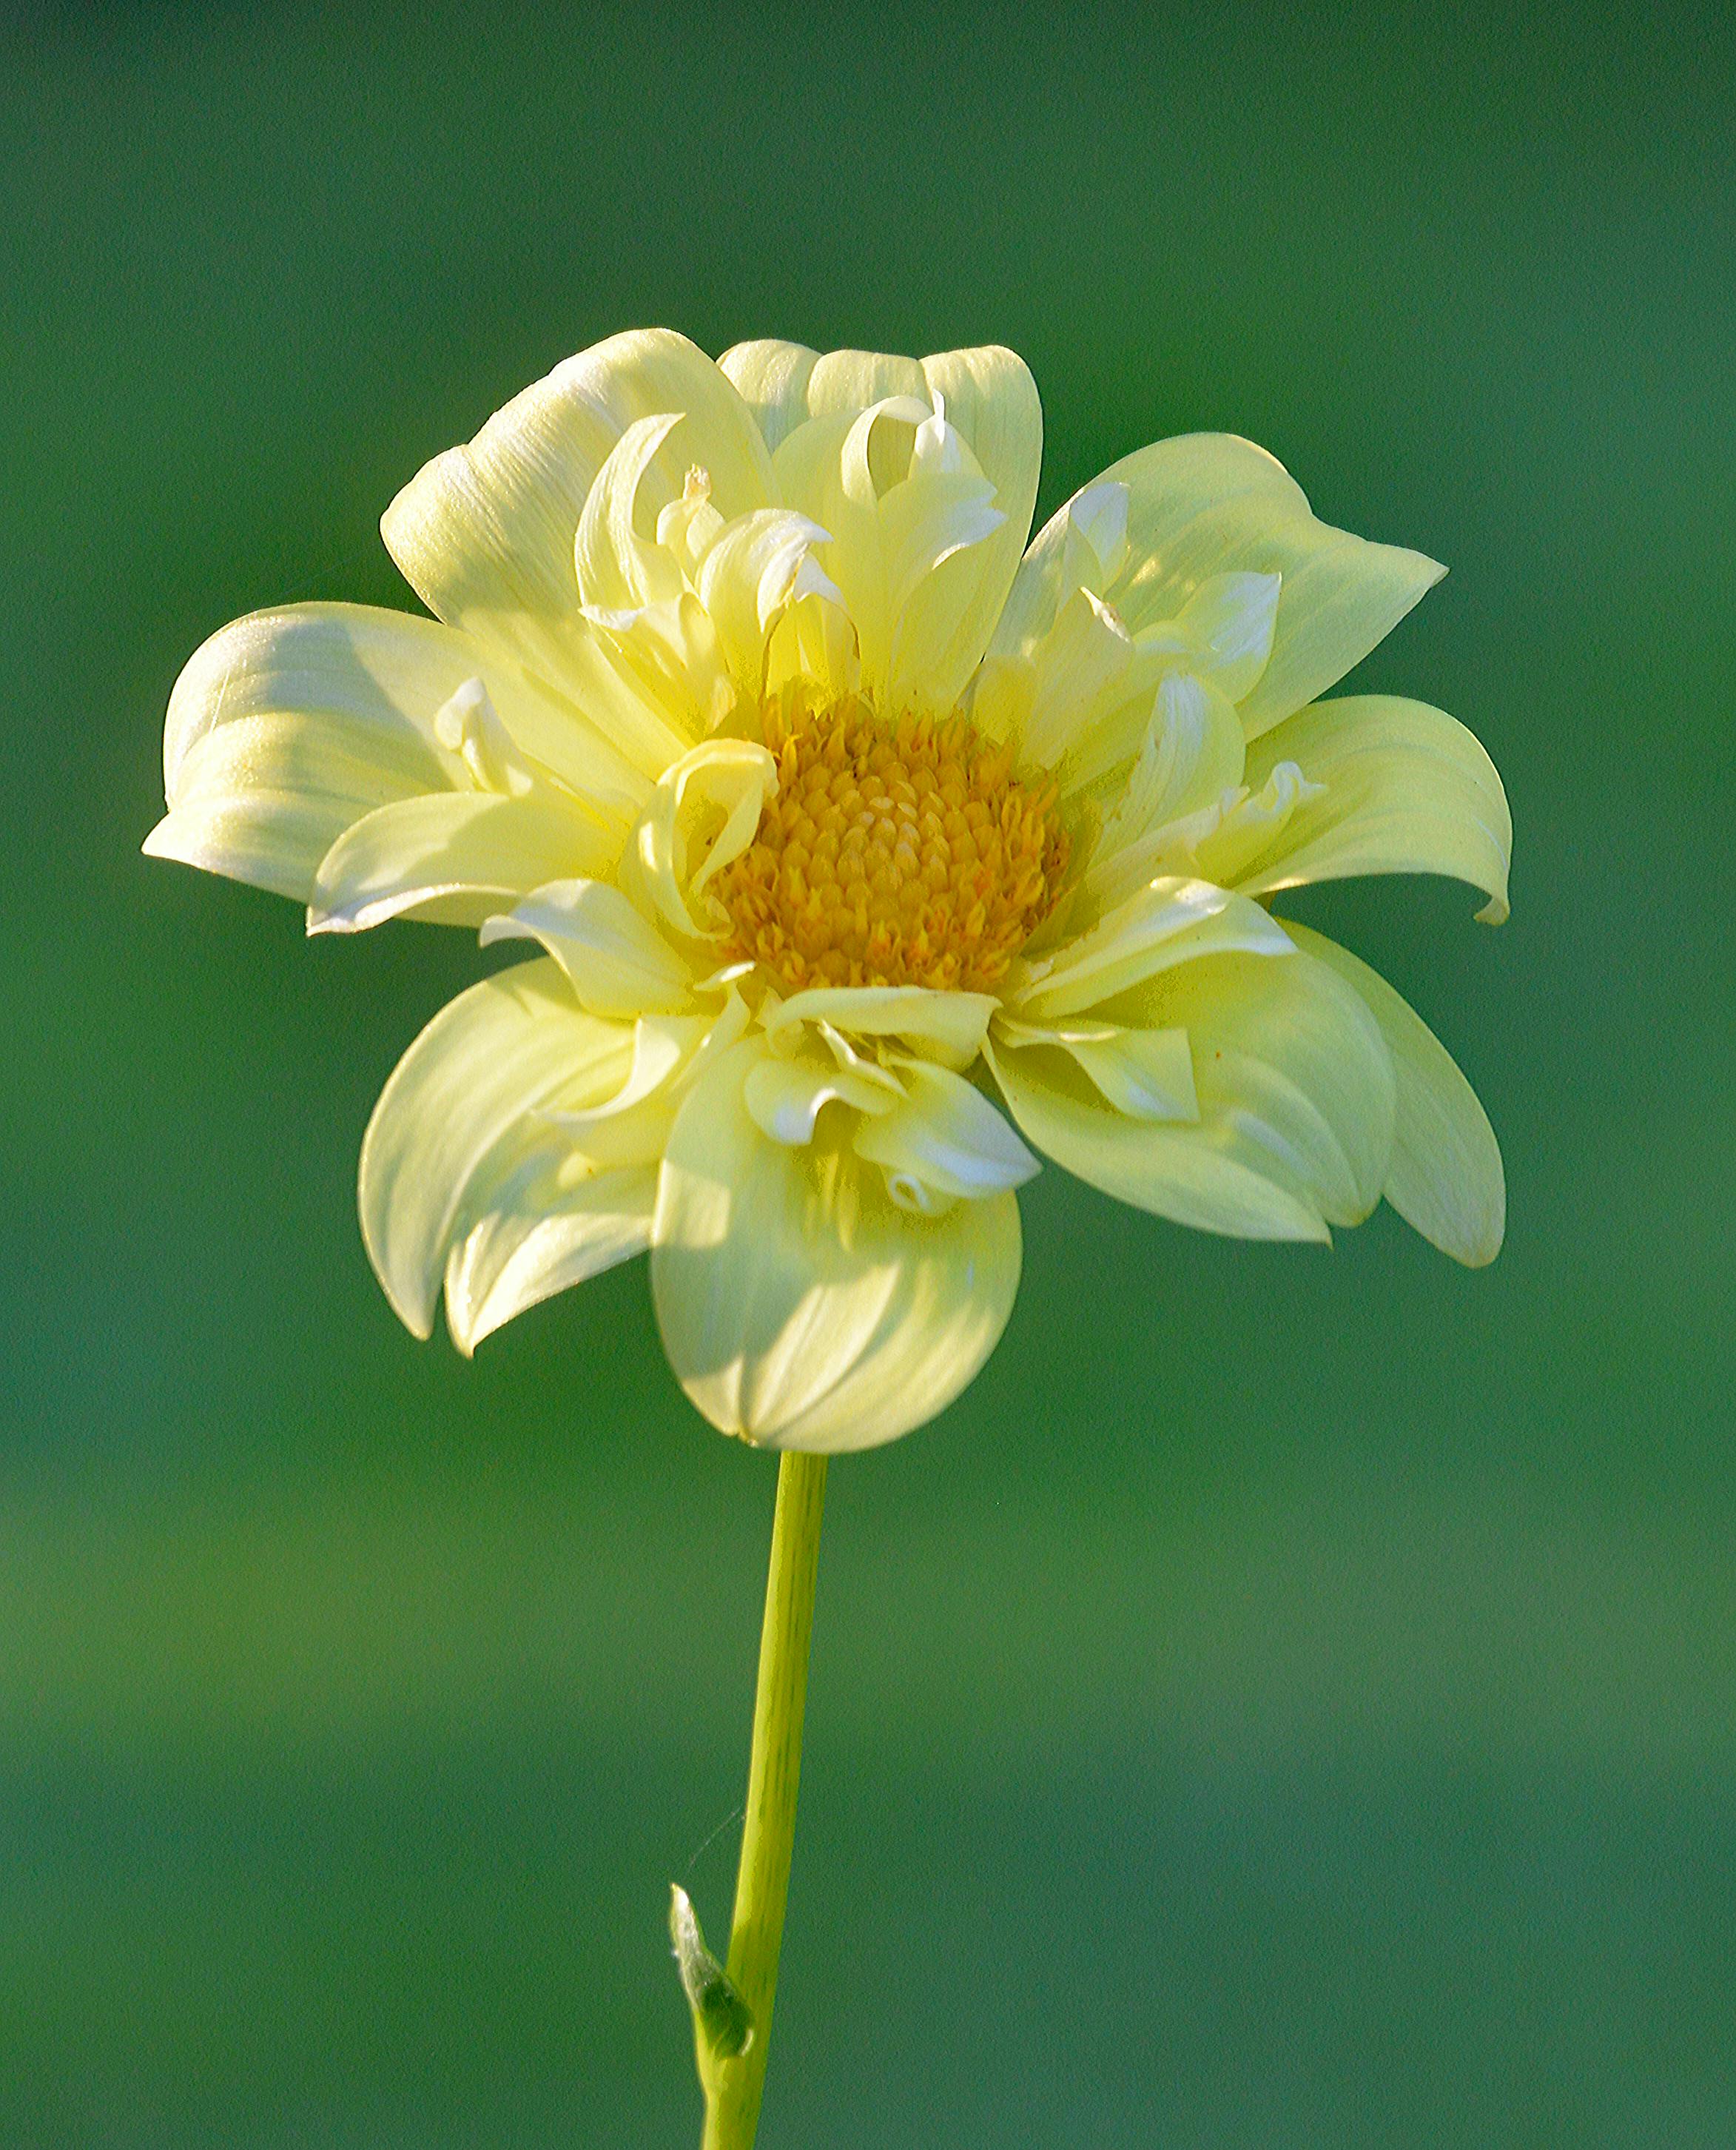 600000 ảnh đẹp nhất về Những Bông Hoa Đẹp  Tải xuống miễn phí 100  Ảnh  có sẵn của Pexels